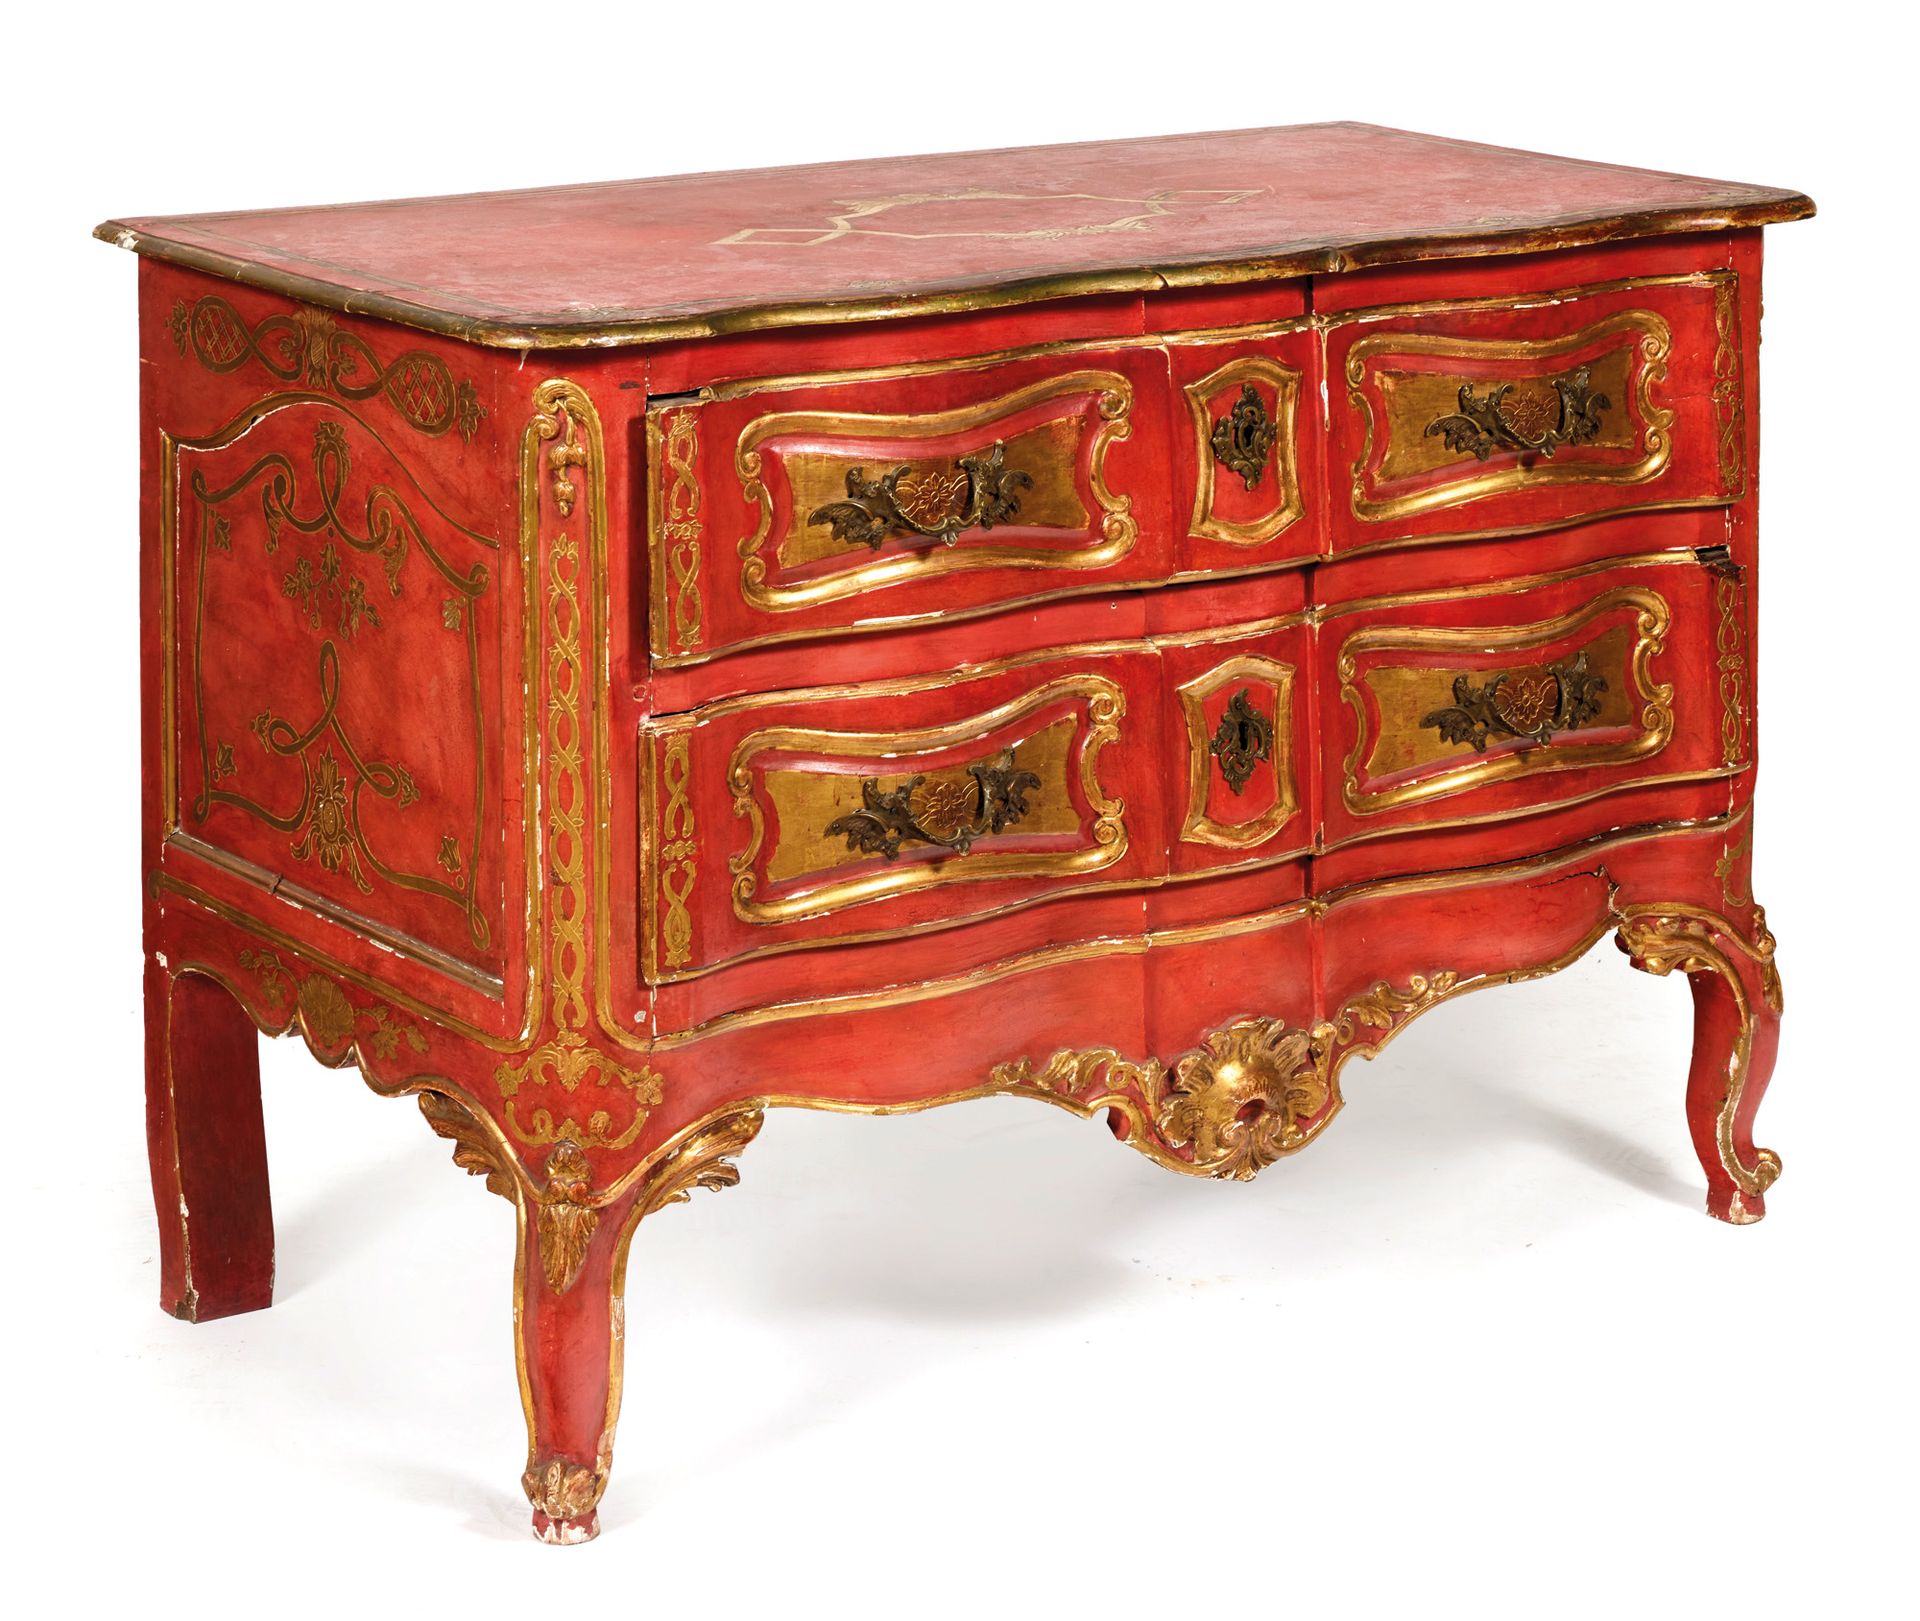 COMMODE 抽屉柜

红色和金色漆木的弩形抽屉柜，开有两个抽屉，弯曲的腿上有树叶卷轴

18世纪的意大利作品

89 x 128 x 63 cm